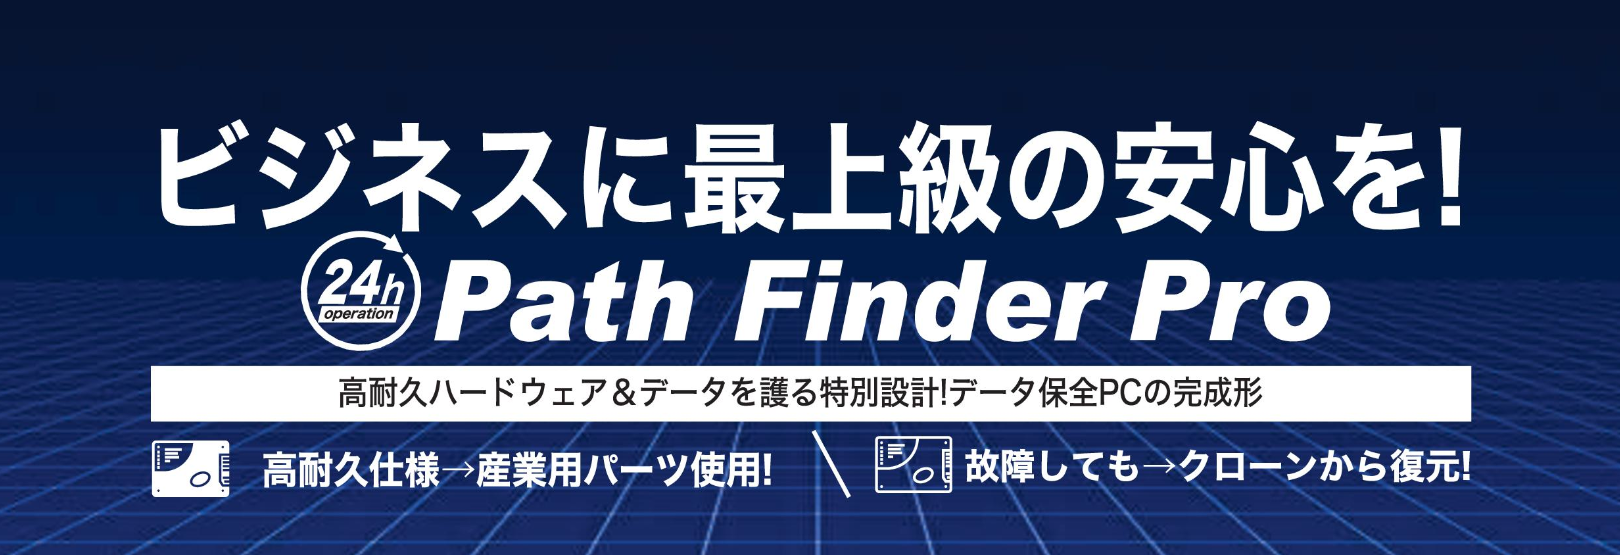 Path Finder Pro シリーズ